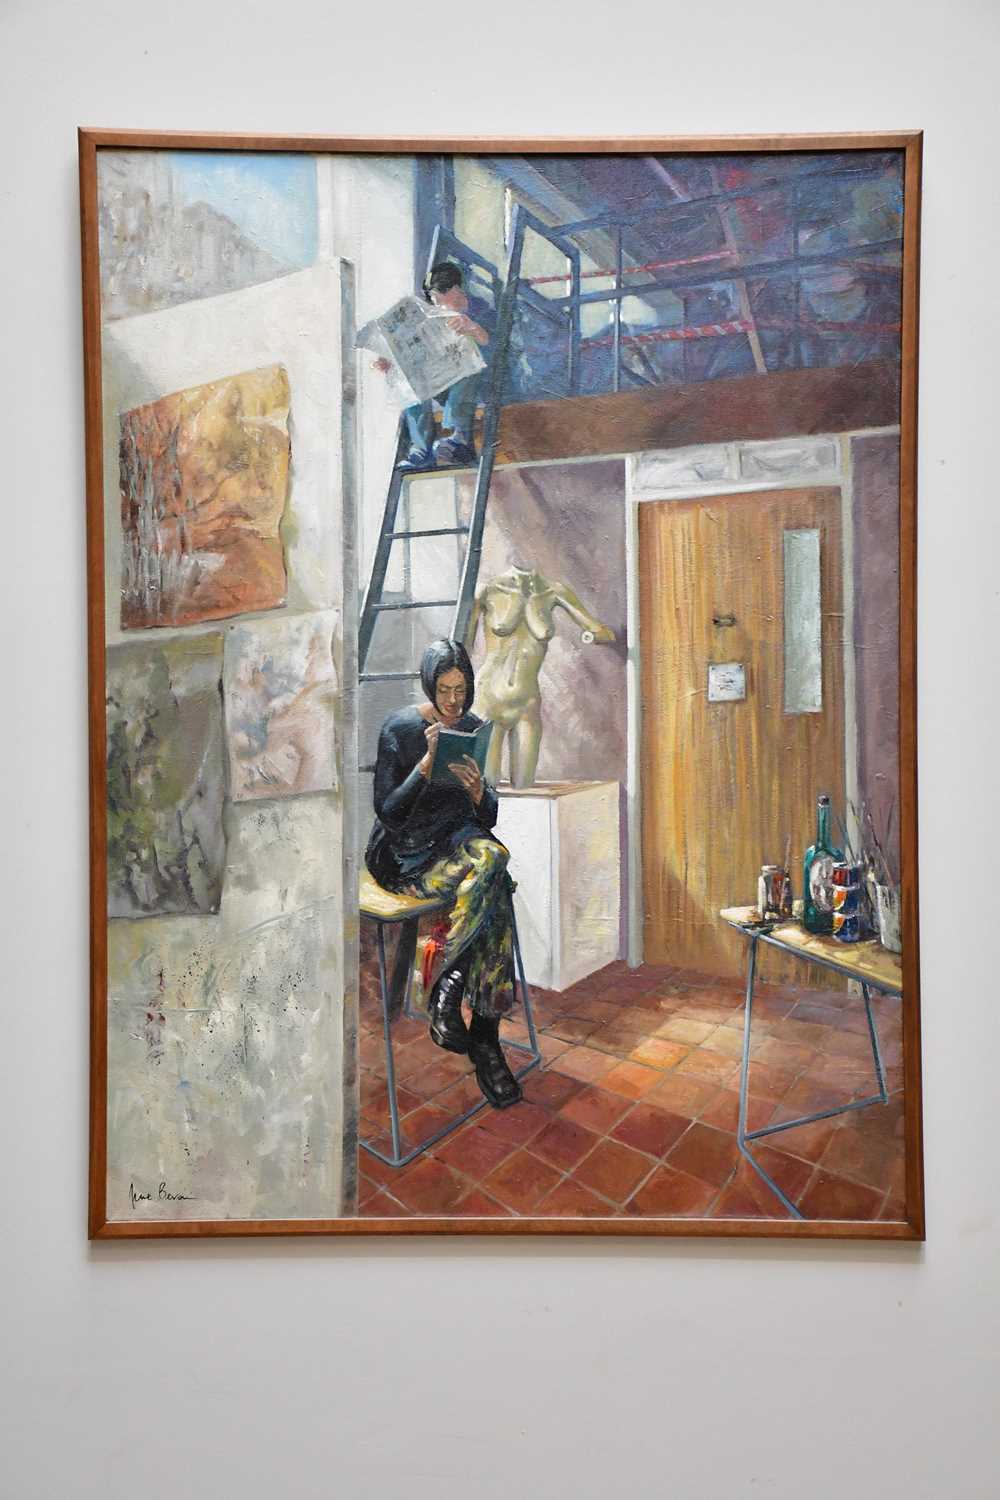 † JUNE BEVAN; oil on canvas, 'Art Student's Lunch Break', signed lower left, 122 x 90cm, framed.